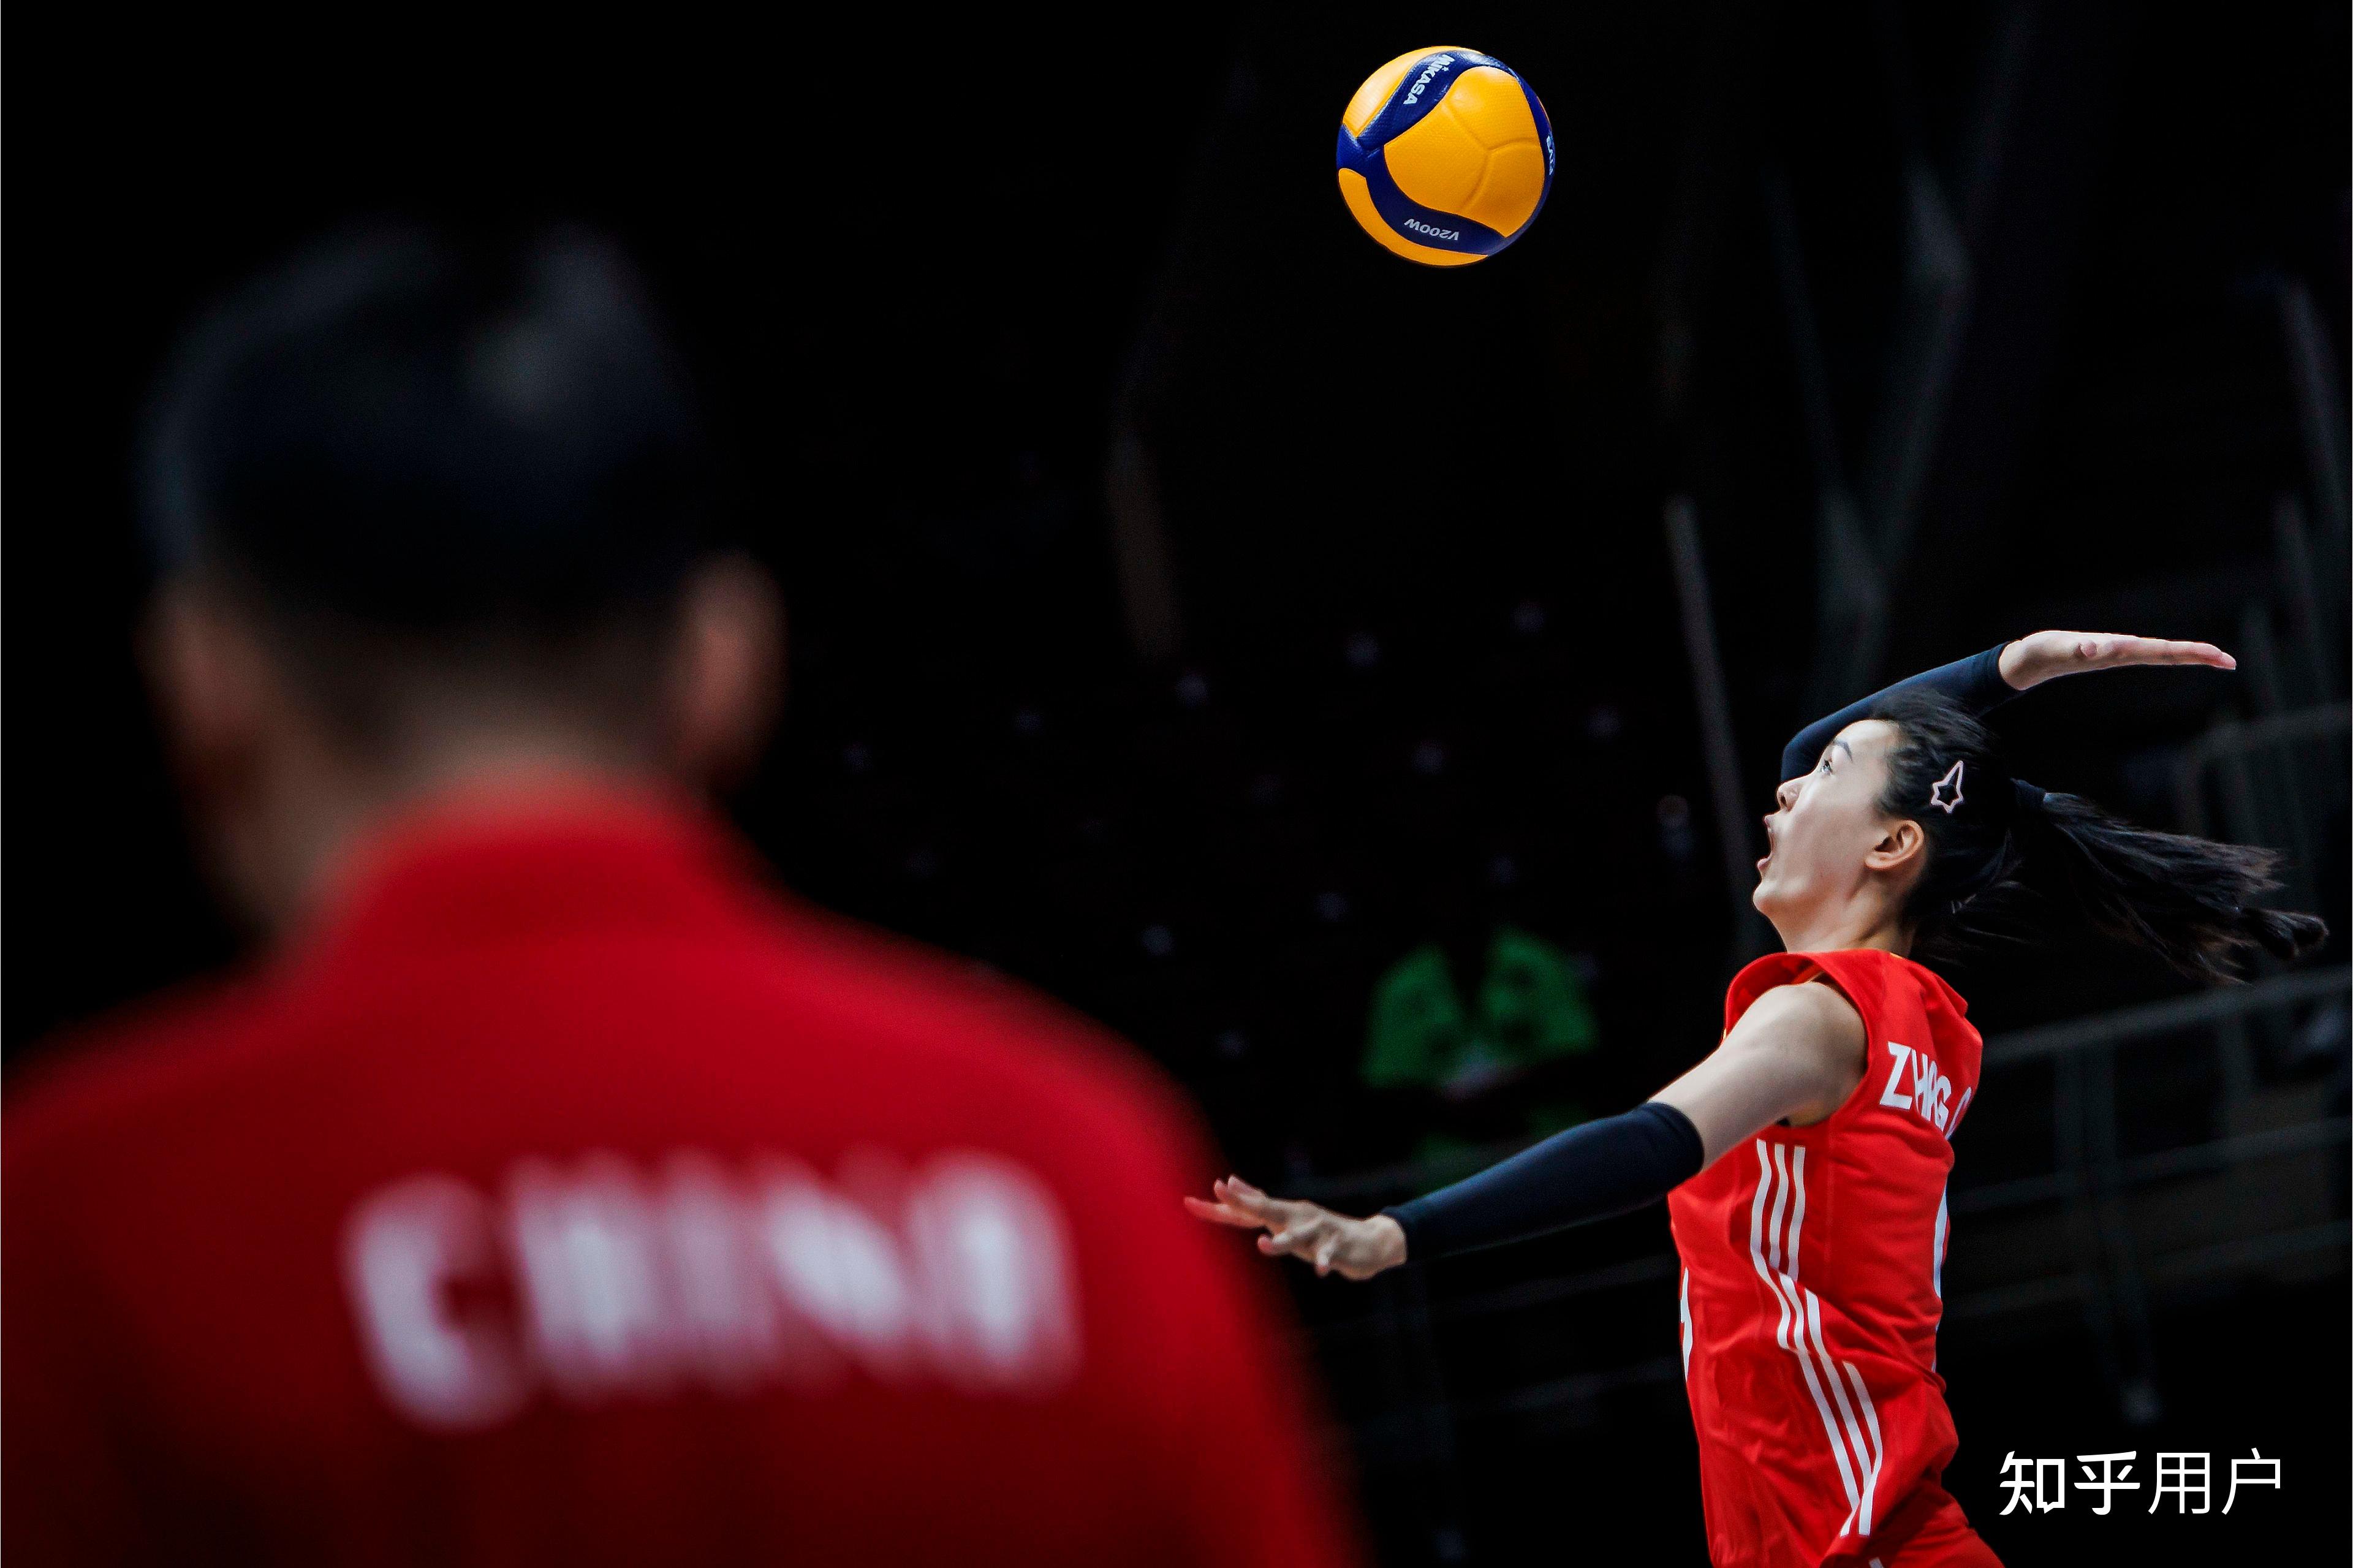 中国女排 3:0 横扫韩国队,张常宁上演回归首秀,如何评价她比赛中的